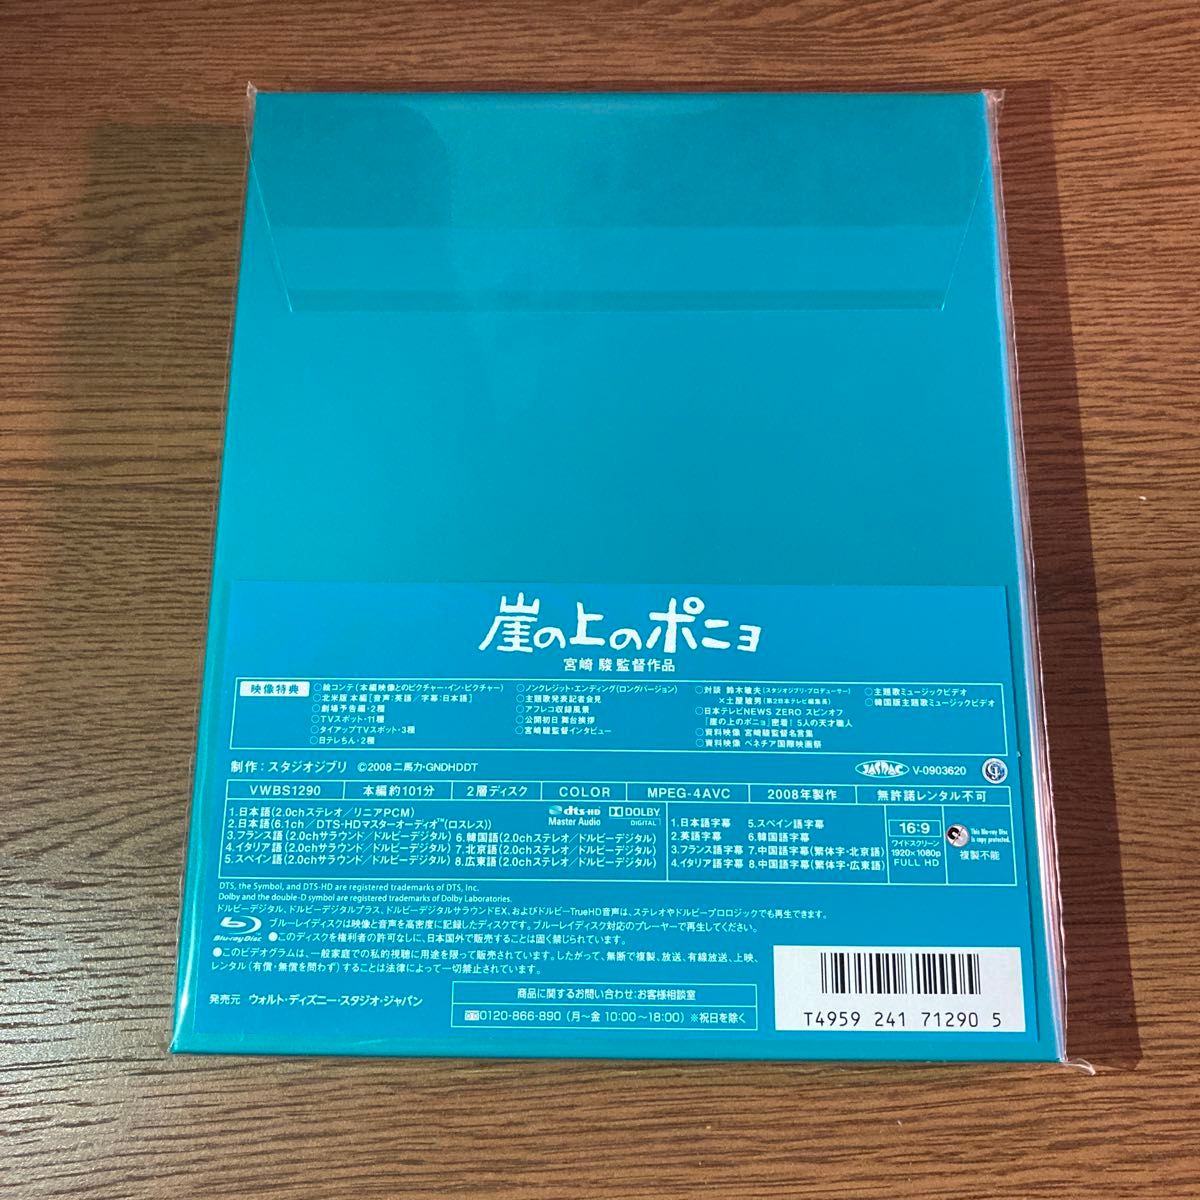 崖の上のポニョ (Blu-ray Disc) スタジオジブリ